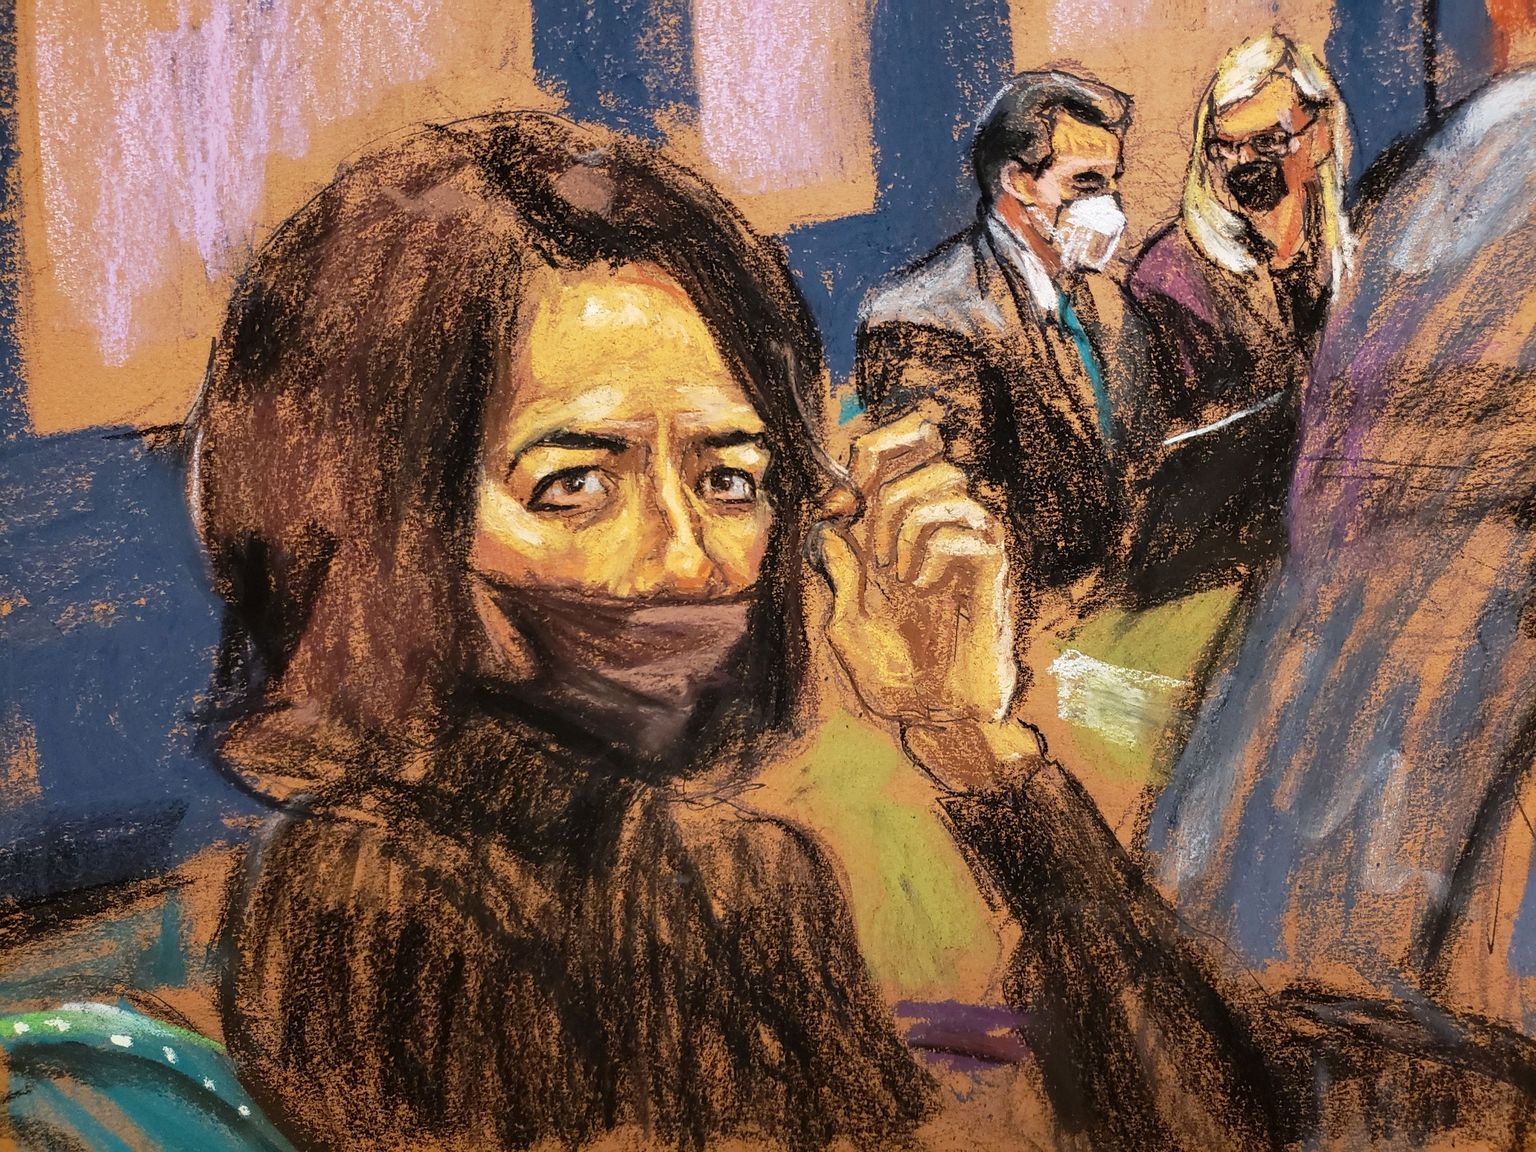 Kohtukunstnik Jane Rosenbergi joonistatud pilt Ghislaine Maxwellist 21. detsembril 2021 New Yorgi kohtus. Kaugemal on näha ta kaht advokaati Jeffrey Pagliucat ja Laura Menningeri